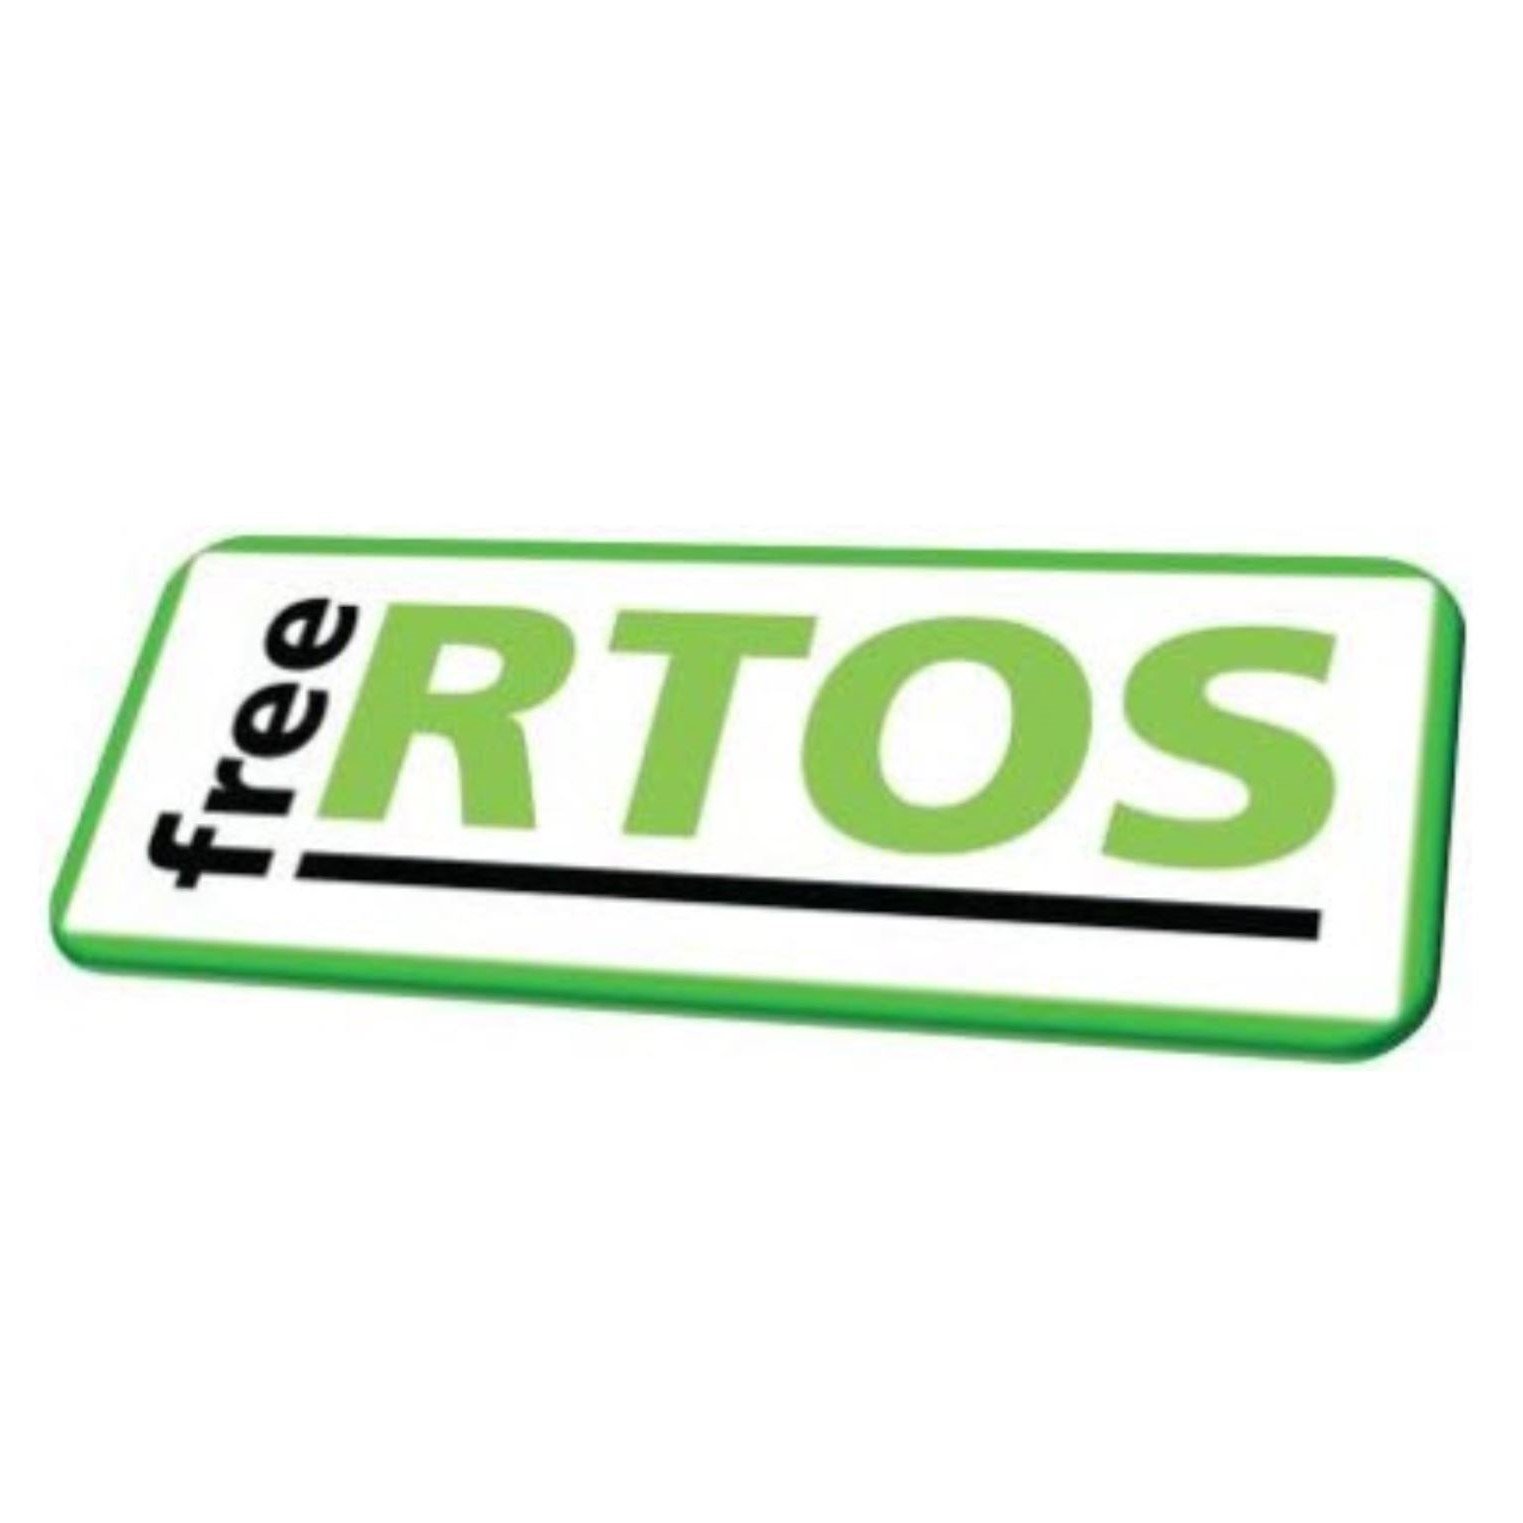 Free RTOS